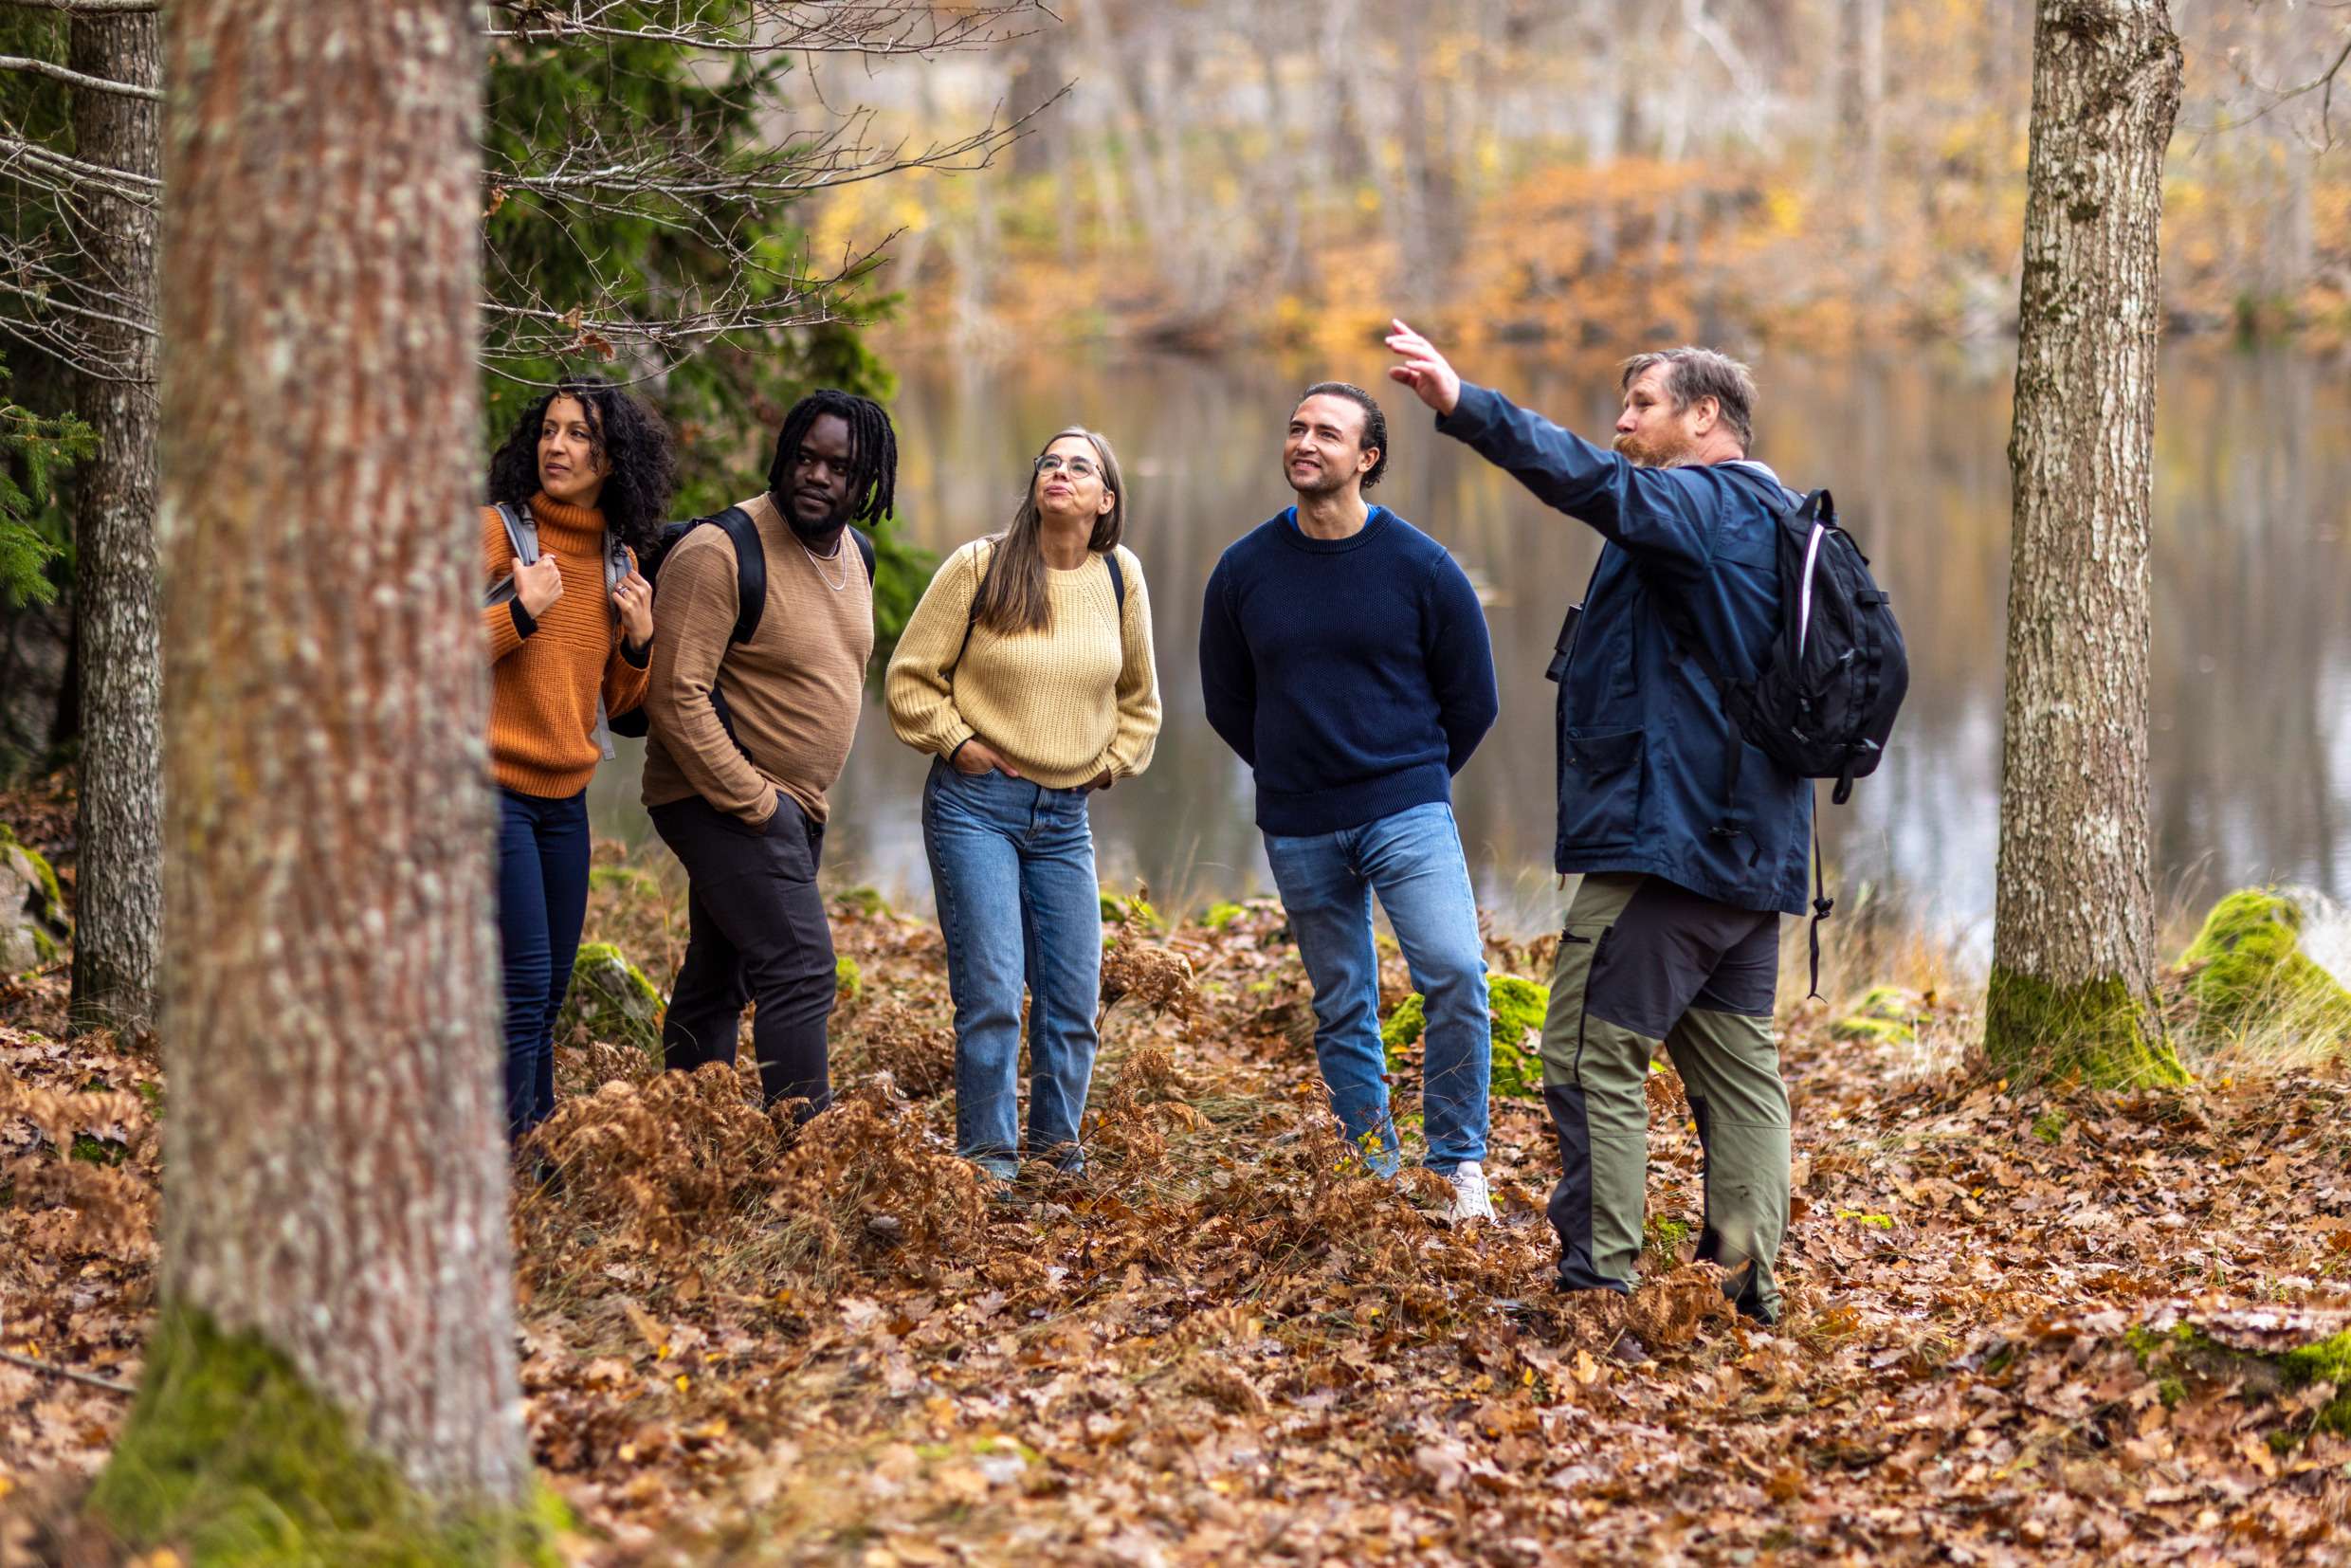 Bilden visar ett skogsparti vid en sjö där en guide står och pekar upp mot ett träd och fyra personer står nedanför honom och tittar åt det hållet han pekar.